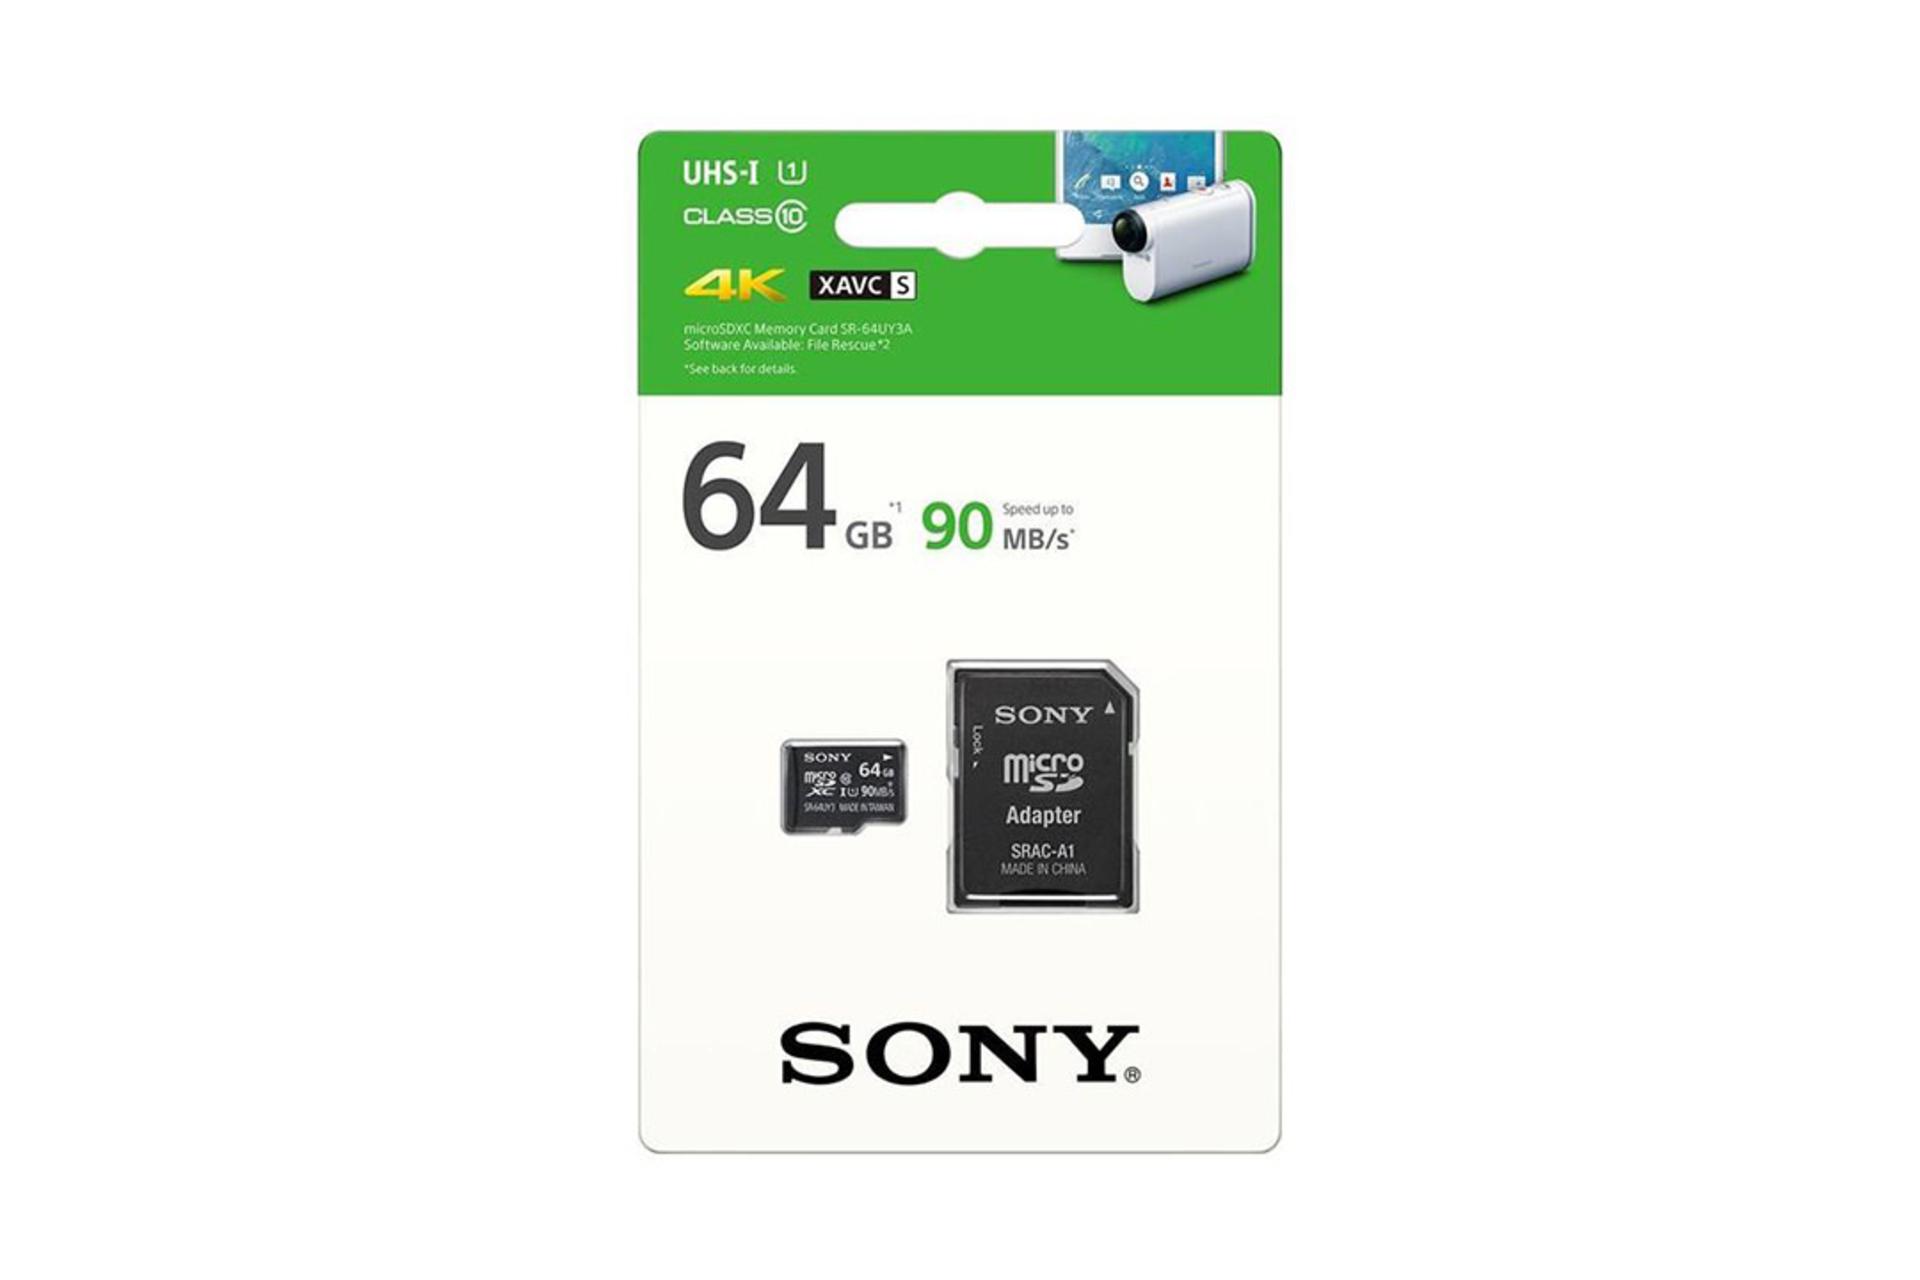 Sony SR-64UY3A microSDXC Class 10 UHS-I U1 64GB